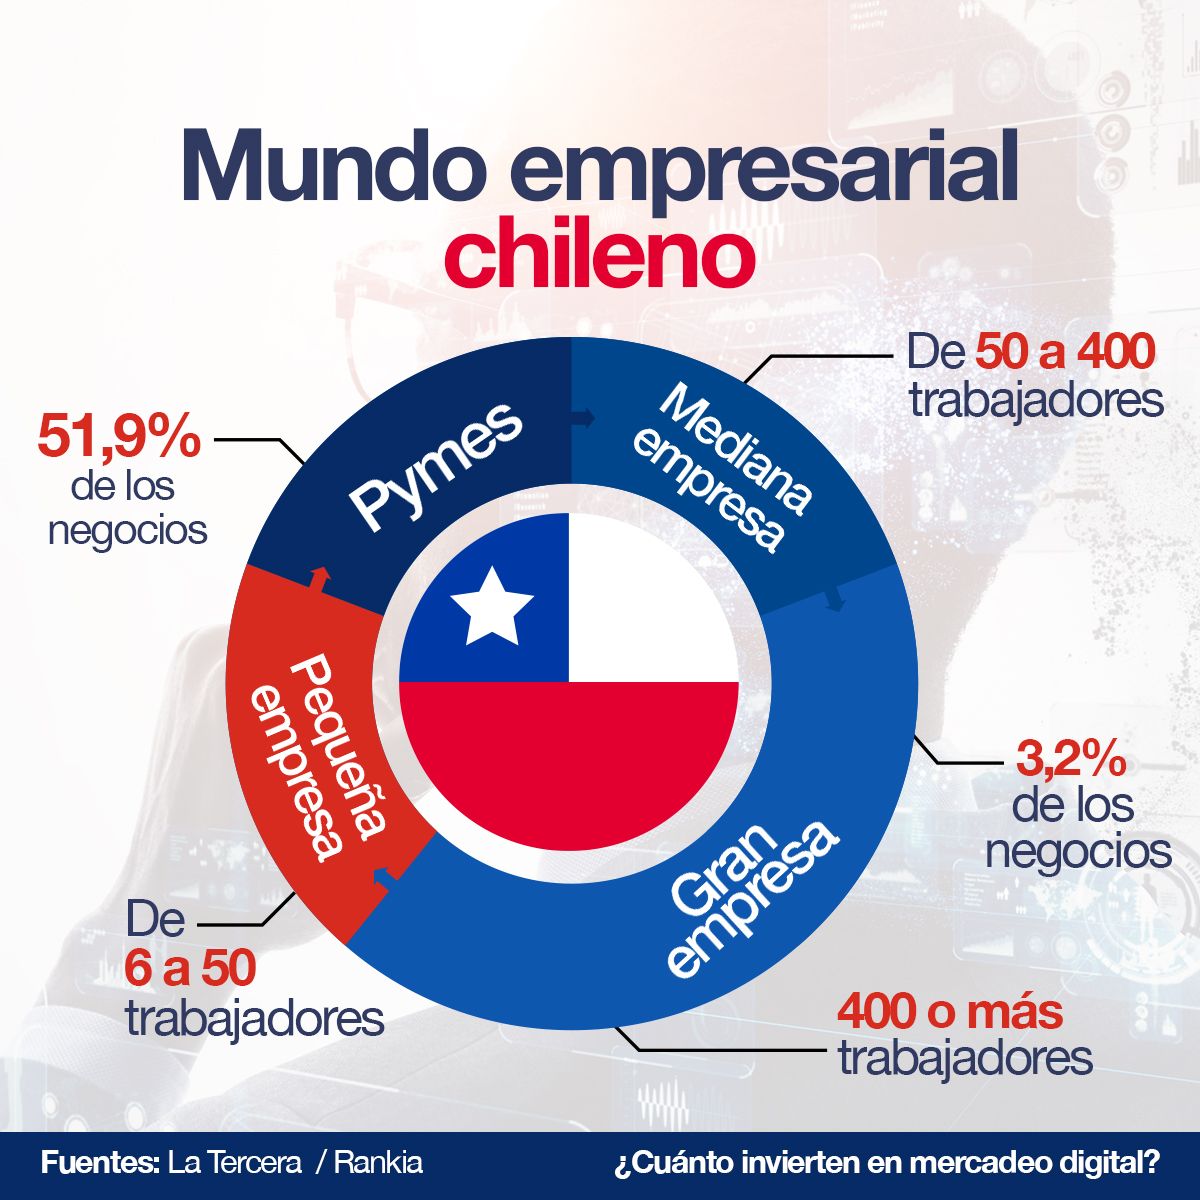 Mundo Empresarial Chileno Pymes 51,9% de los Negocios Pequeña Empresa de 6 a 50 Trabajadores Mediana Empresa de 50 a 400 Trabajadores Gran Empresa 3,2% de los Negocios 400 o más Trabajadores Fuente: La Tercera Rankia